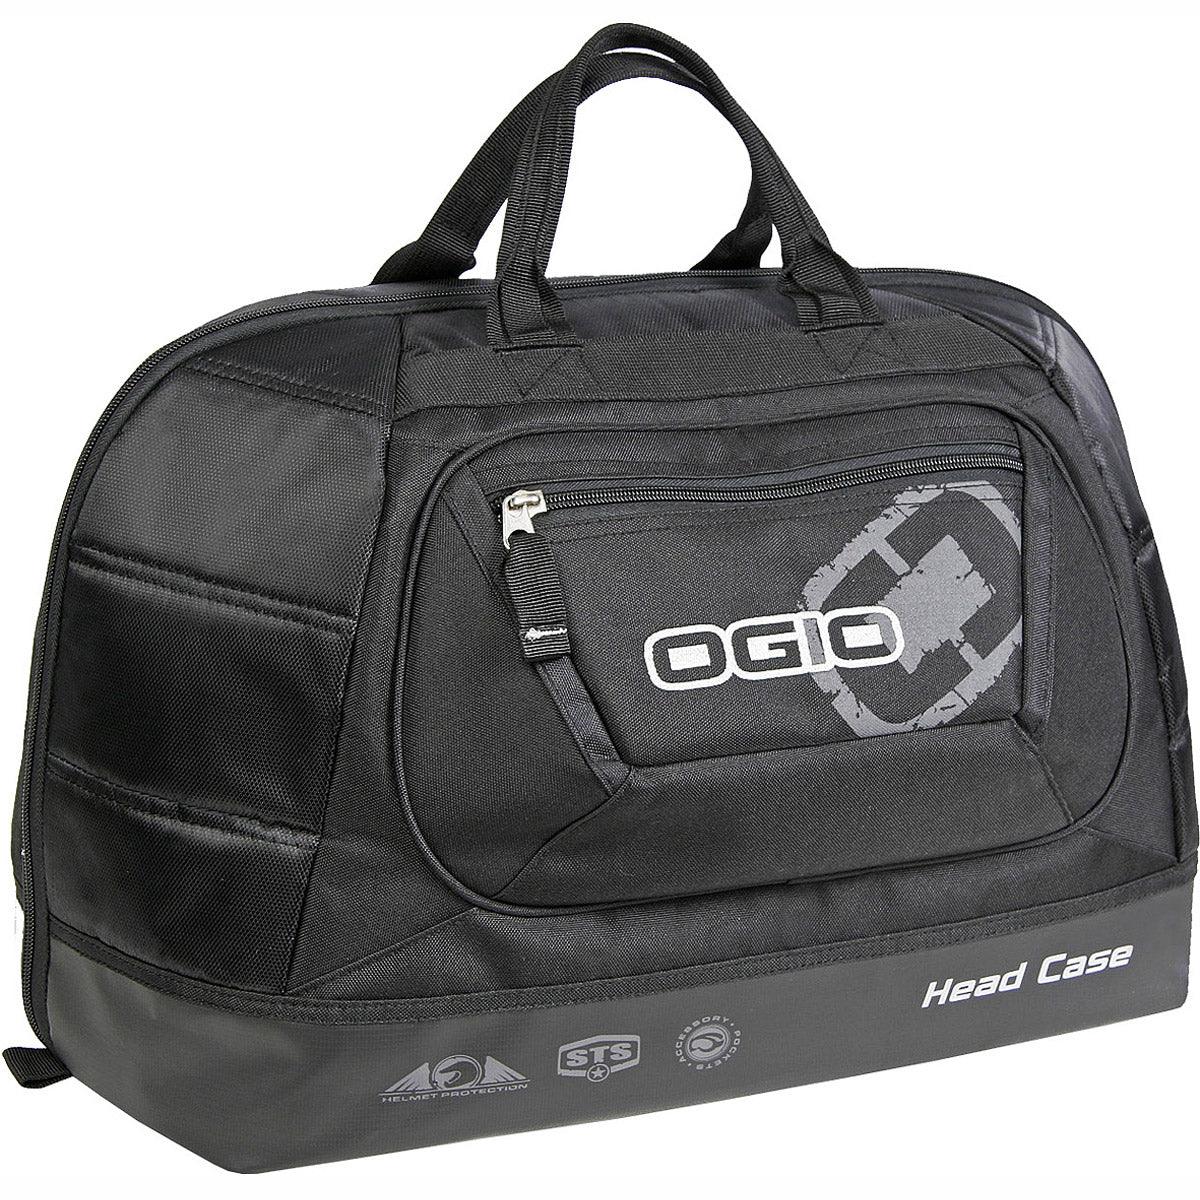 Ogio Protective Helmet Bag Motorbike & Motocross - The Motocrosshut